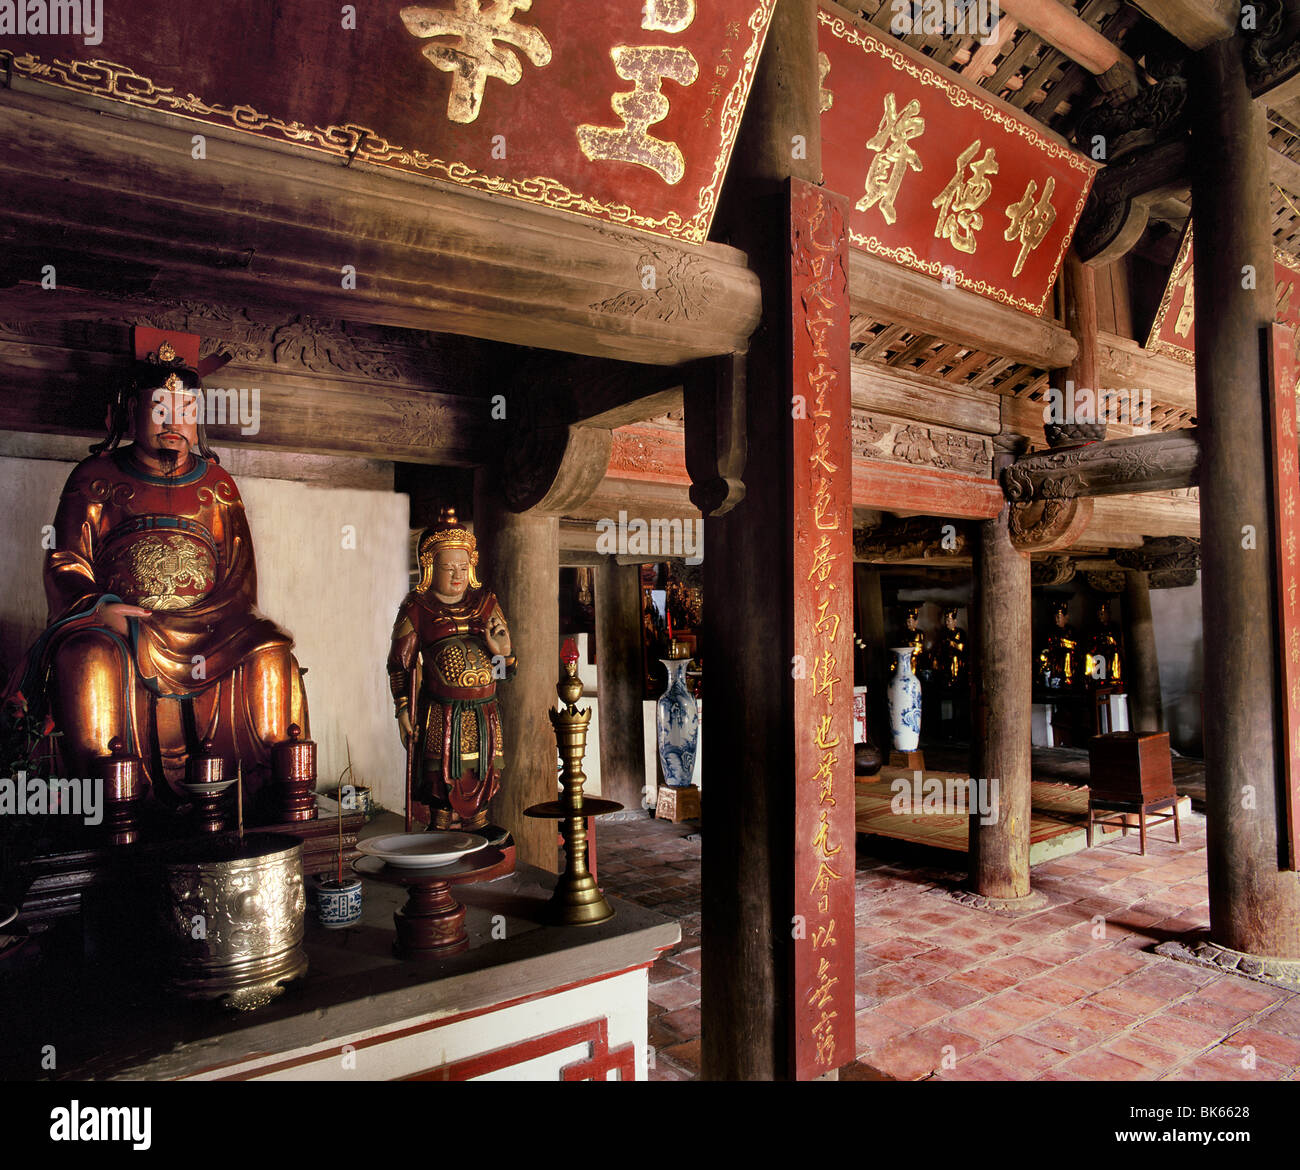 Statue de Confucius dans la grande salle de cérémonie dans un temple Taoïste, Hanoï, Vietnam, Indochine, Asie du Sud-Est, l'Asie Banque D'Images